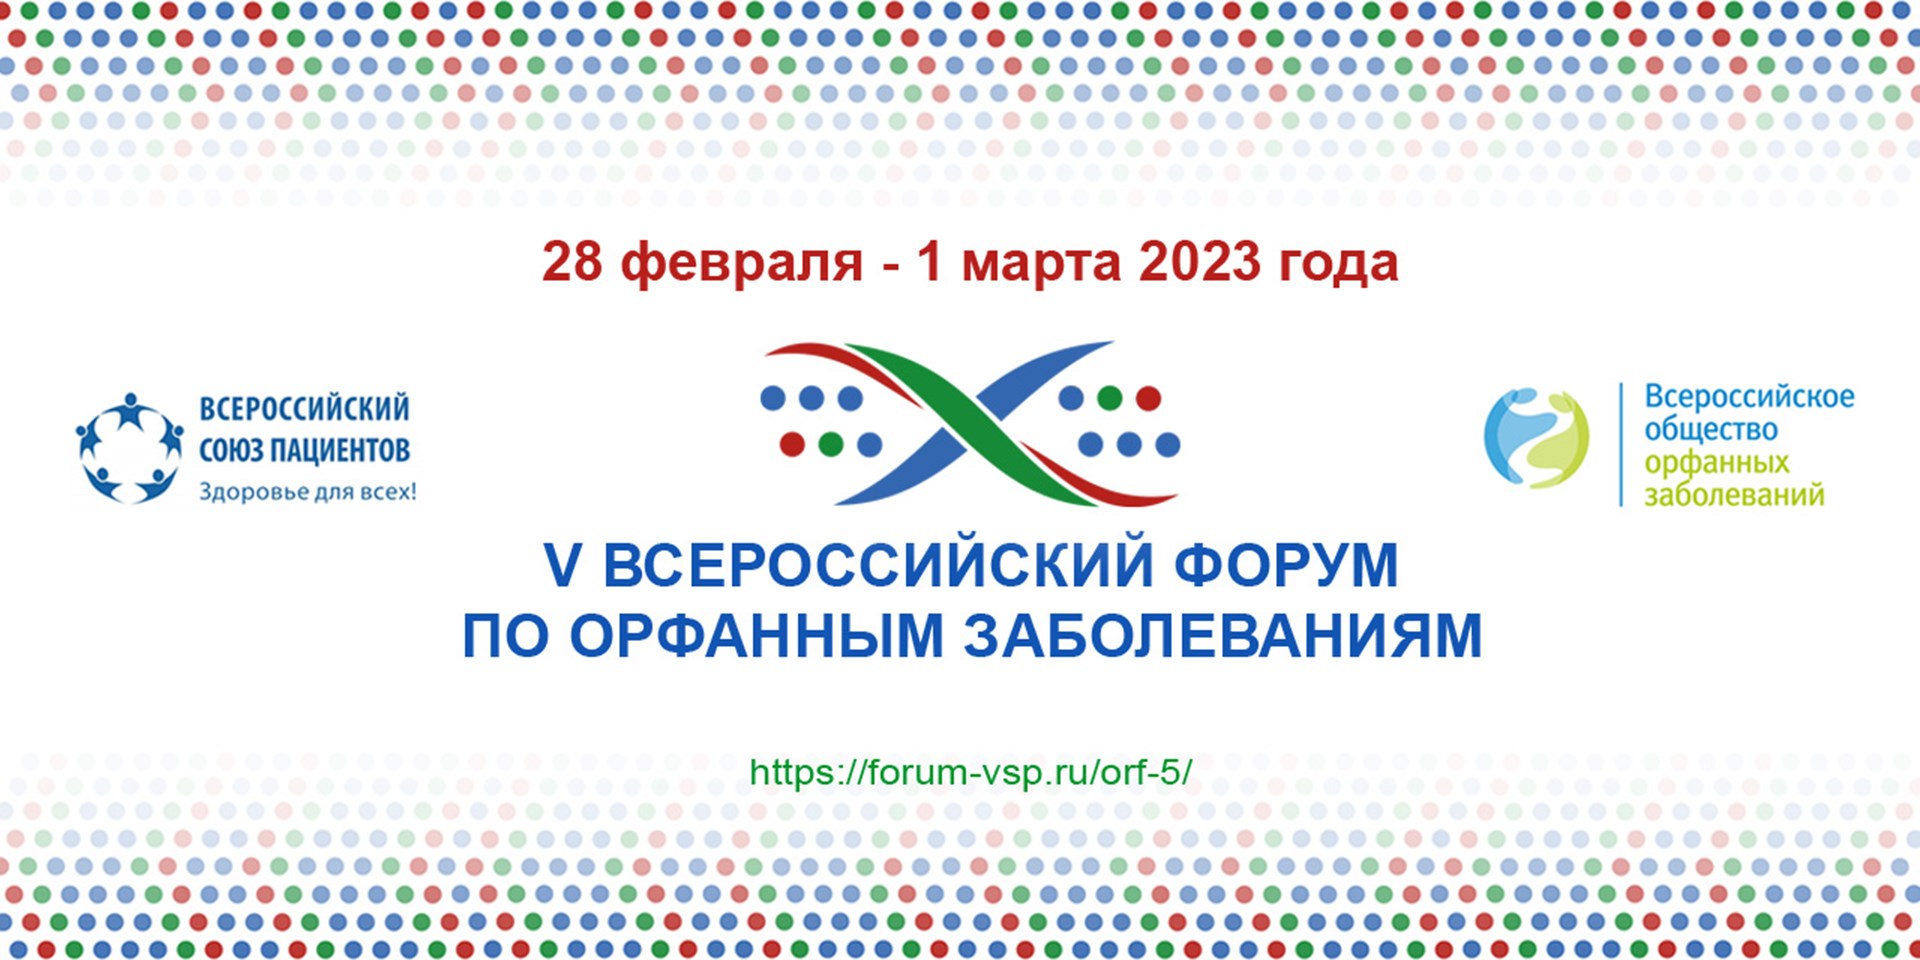 28 февраля - 1 марта состоится V Всероссийский форум по орфанным заболеваниям